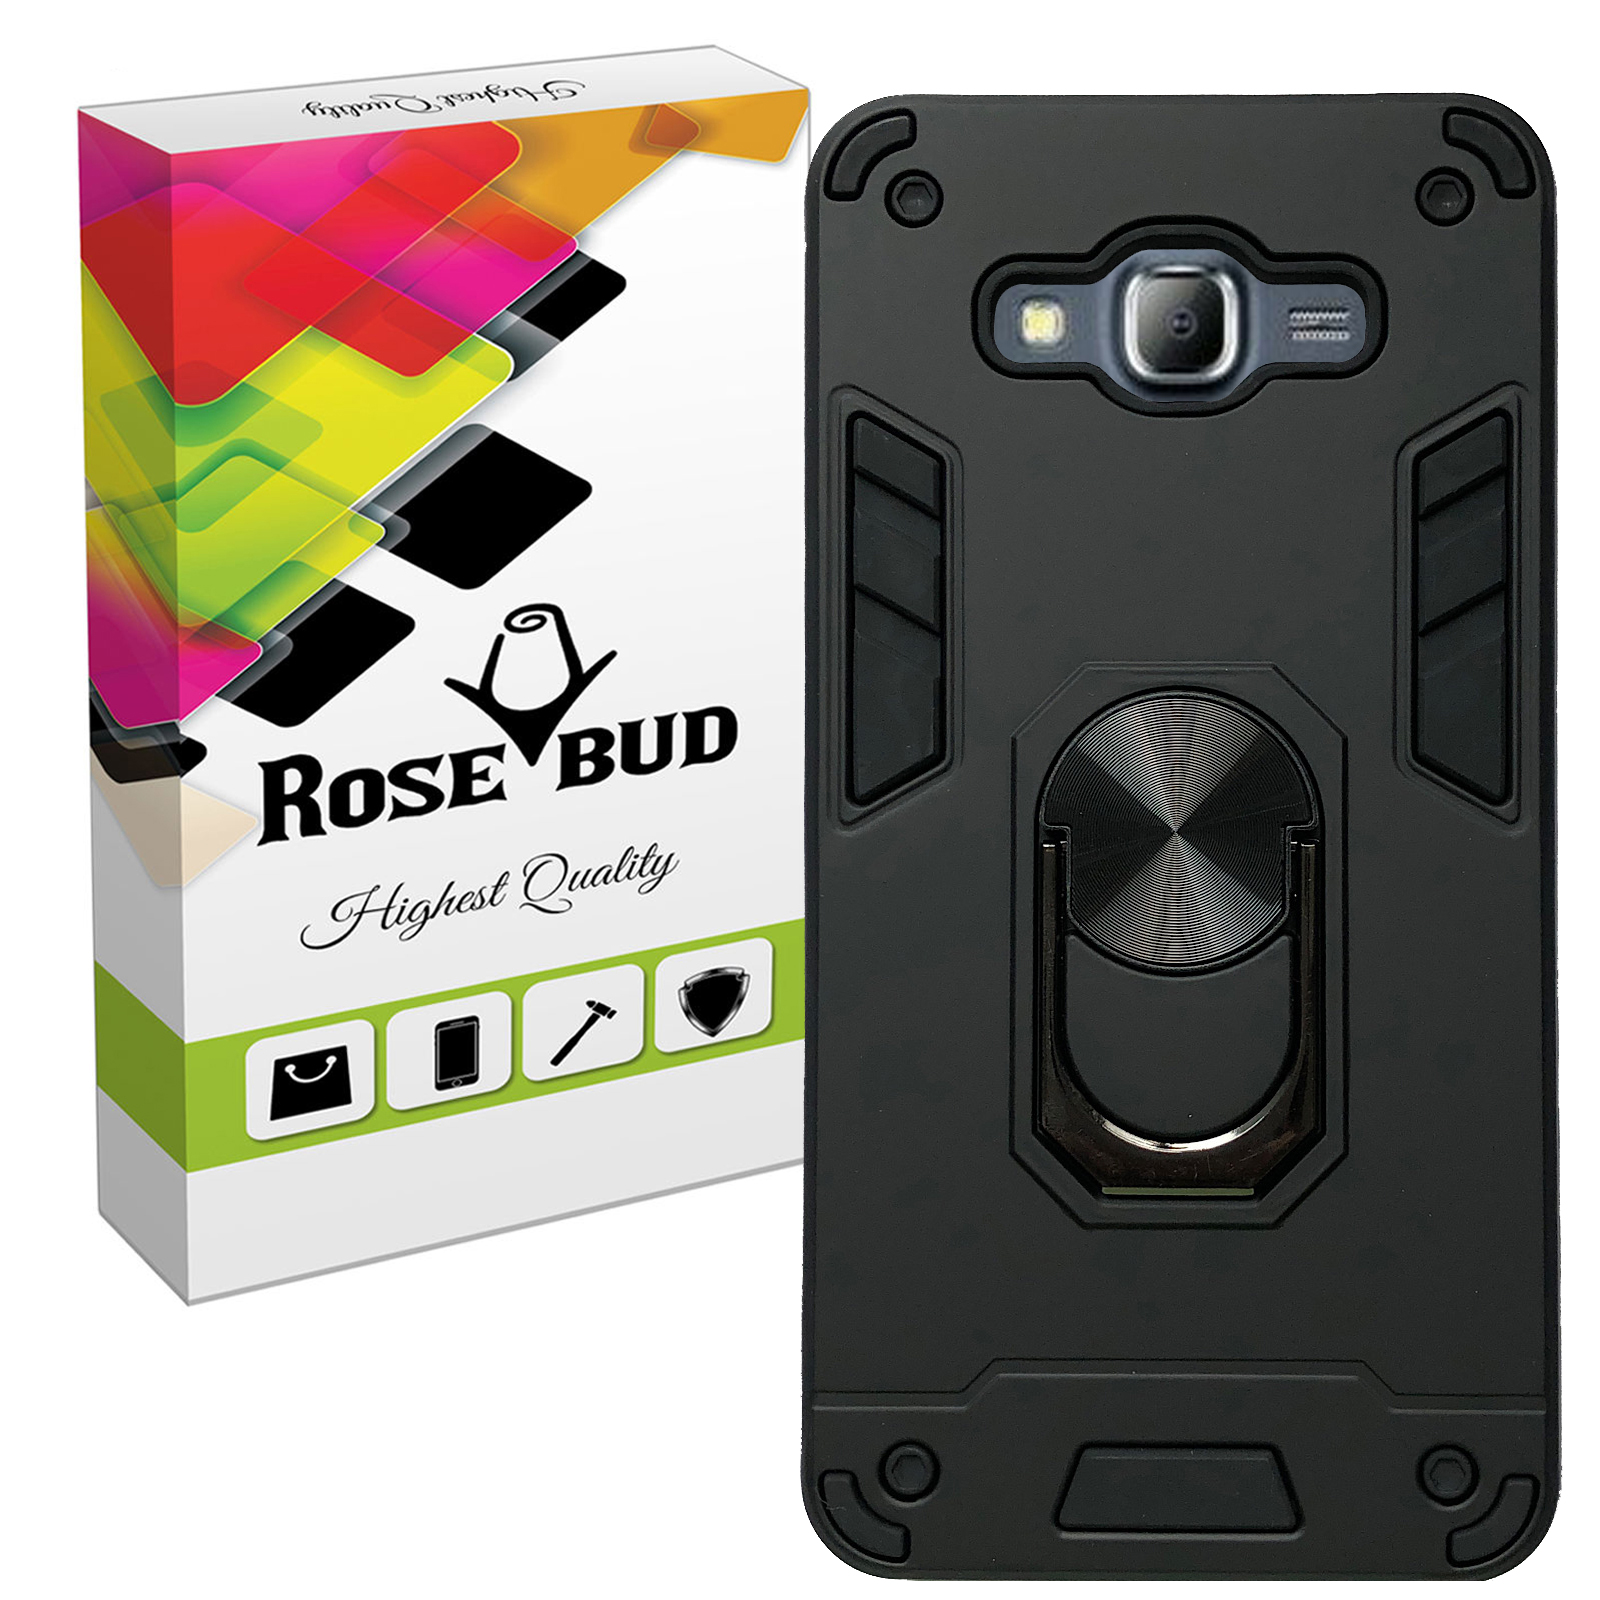 کاور رزباد مدل Rosa003 مناسب برای گوشی موبایل سامسونگ Galaxy Grand Prime / Grand Prime Plus / J2 Prime